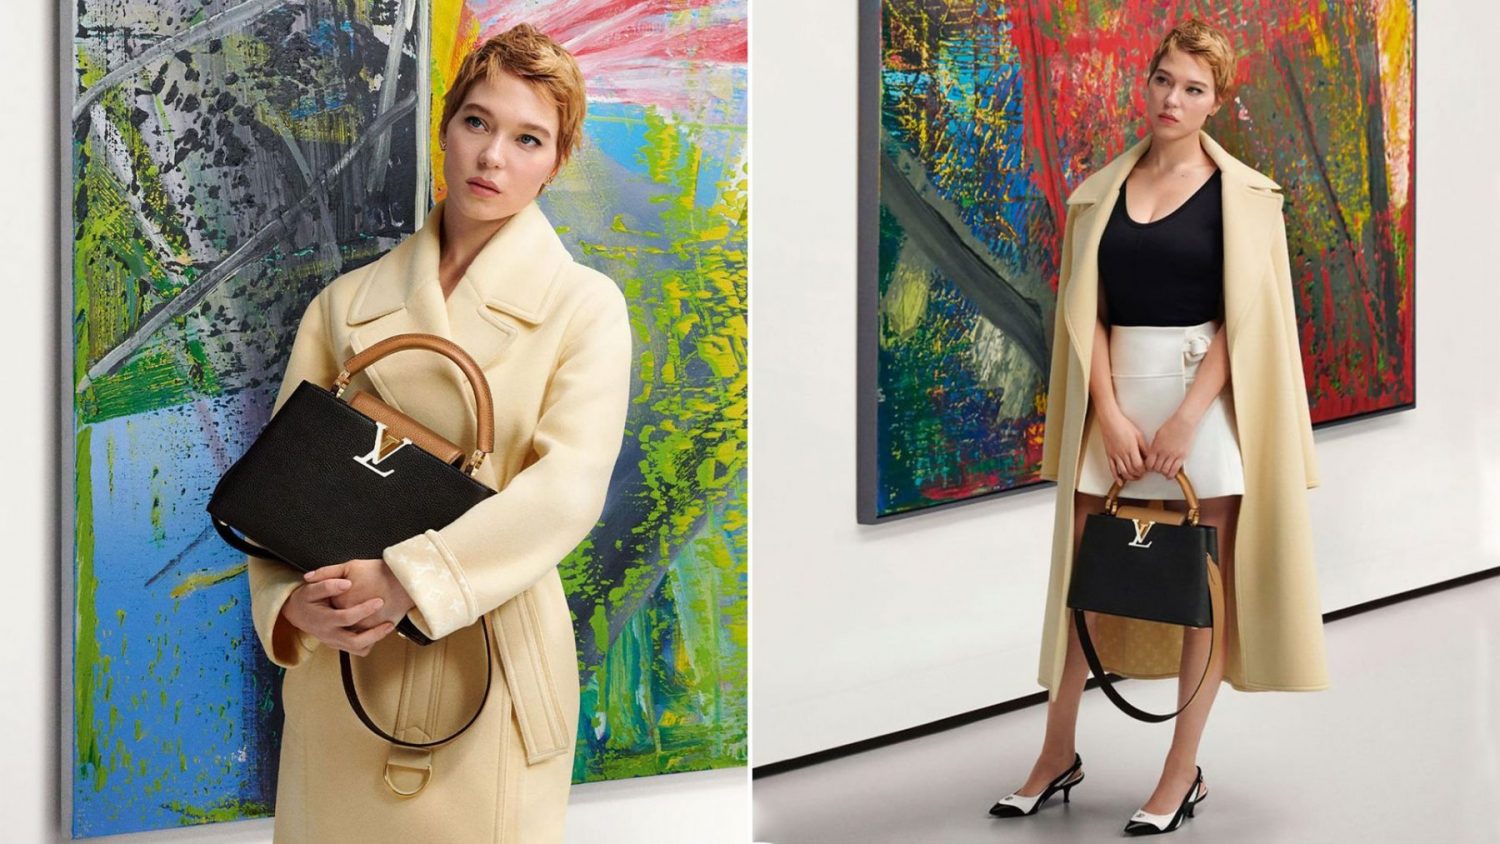 Arte con nombres propios convierten la tienda de Louis Vuitton en